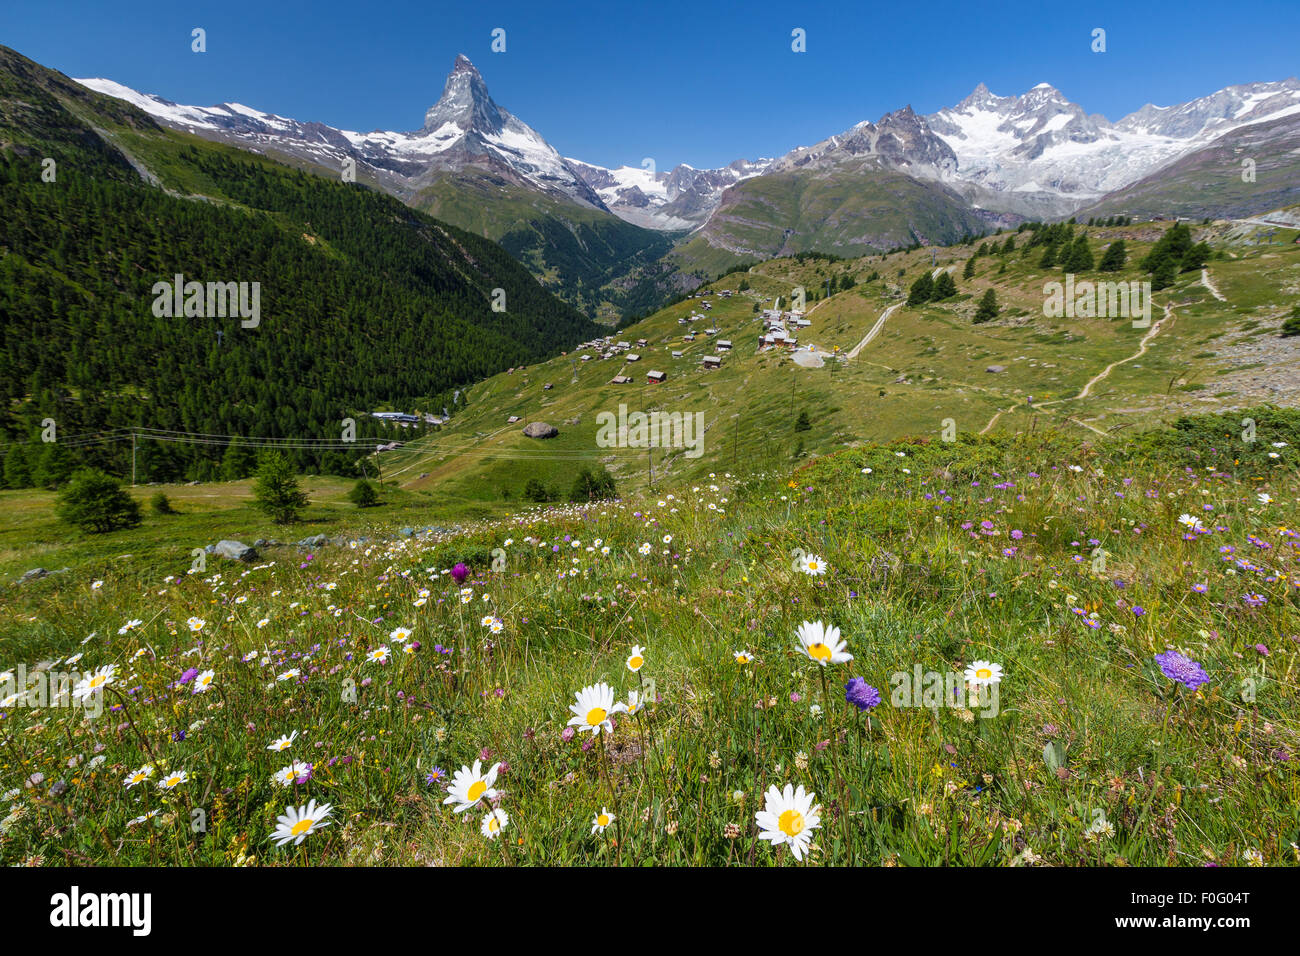 Paysage alpin des Alpes suisses ; près de Zermatt Matterhorn (Cervin) pic de montagne. Fleurs en prairie alpine, la saison d'été. La Suisse Banque D'Images